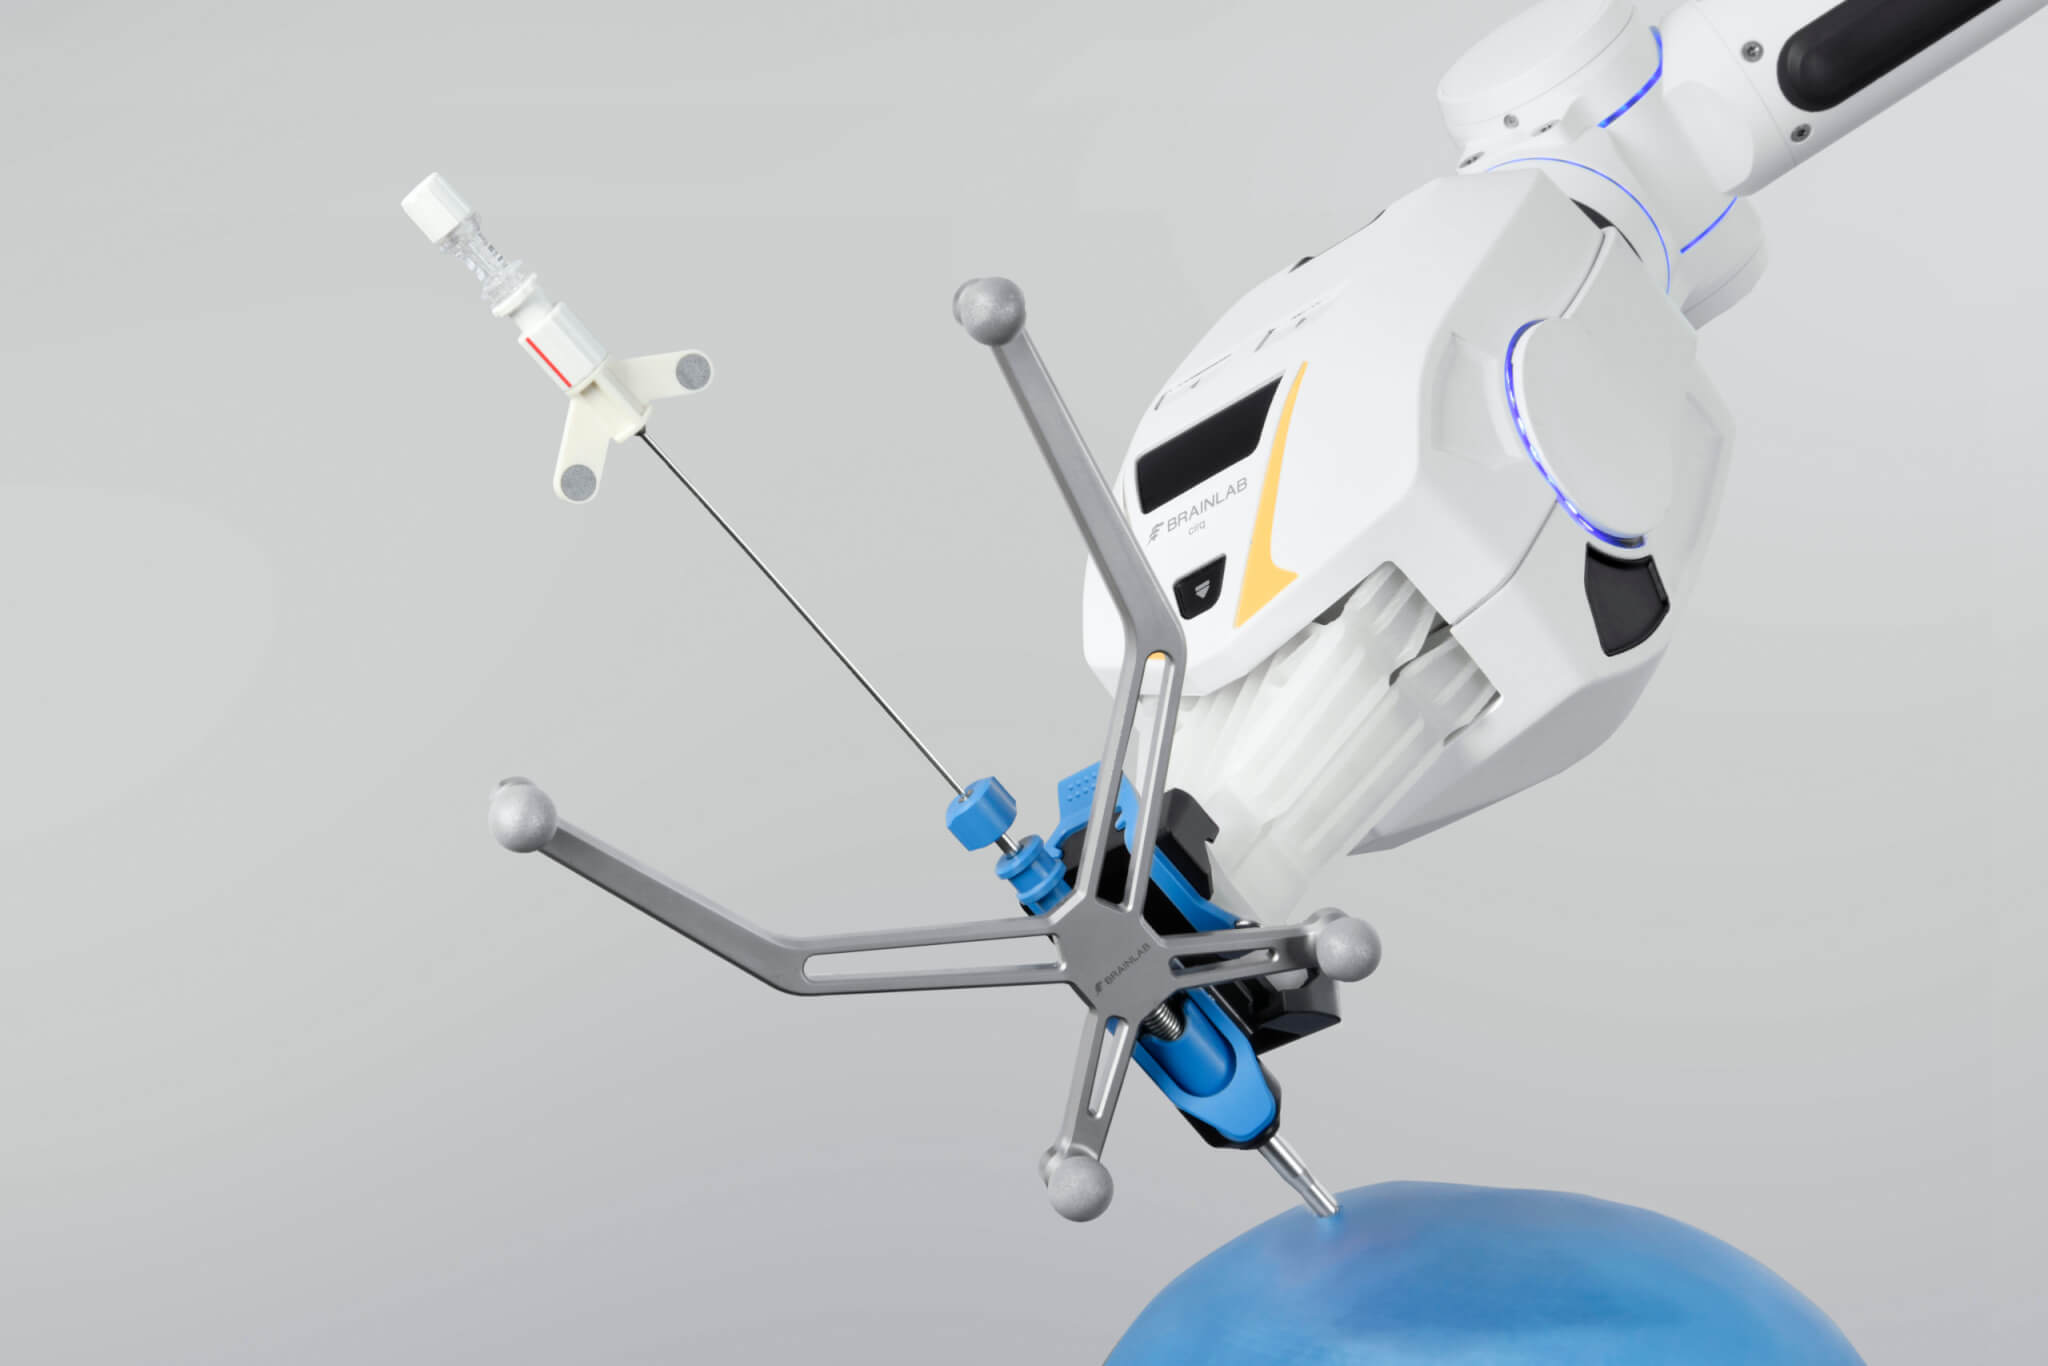 Ein chirurgisches Roboterarmsystem mit Modul für die kraniale Chirurgie hält eine navigierte Biopsienadel über der blauen Darstellung eines Schädels vor hellgrauem Hintergrund